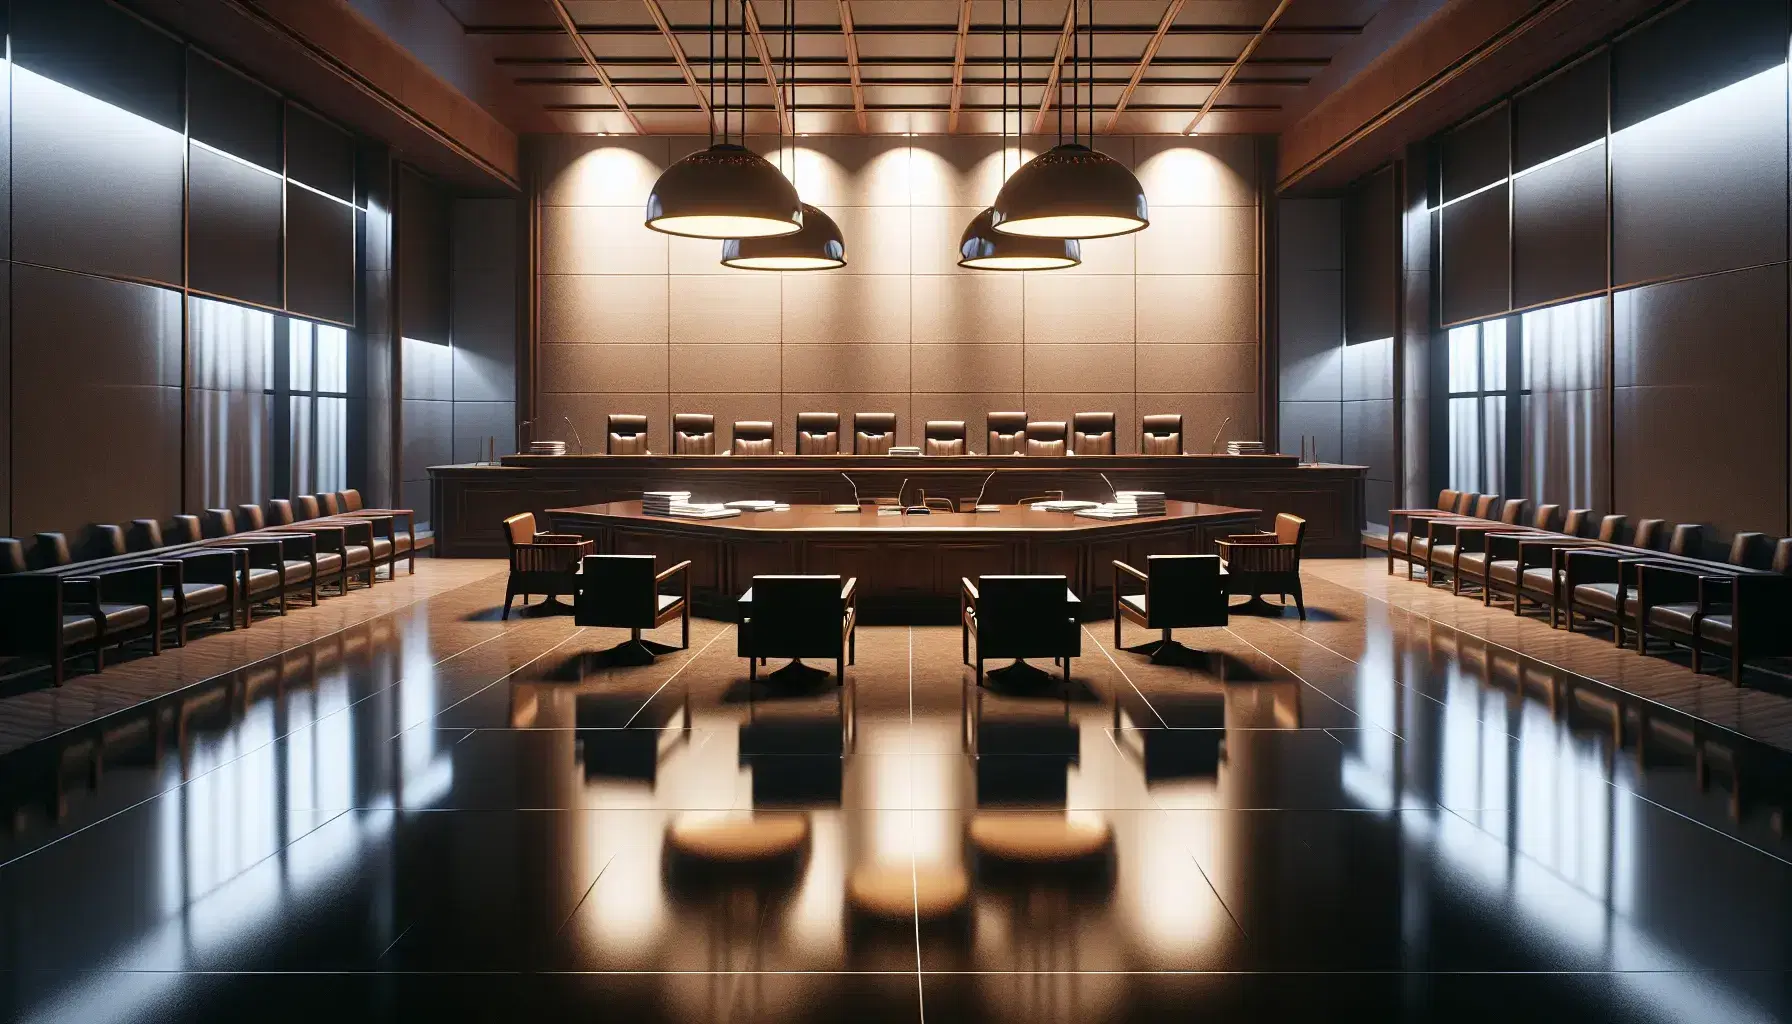 Sala de tribunal vacía con mesa central de madera oscura, sillas a los lados y silla autoritaria al fondo, documentos apilados y suave iluminación colgante.